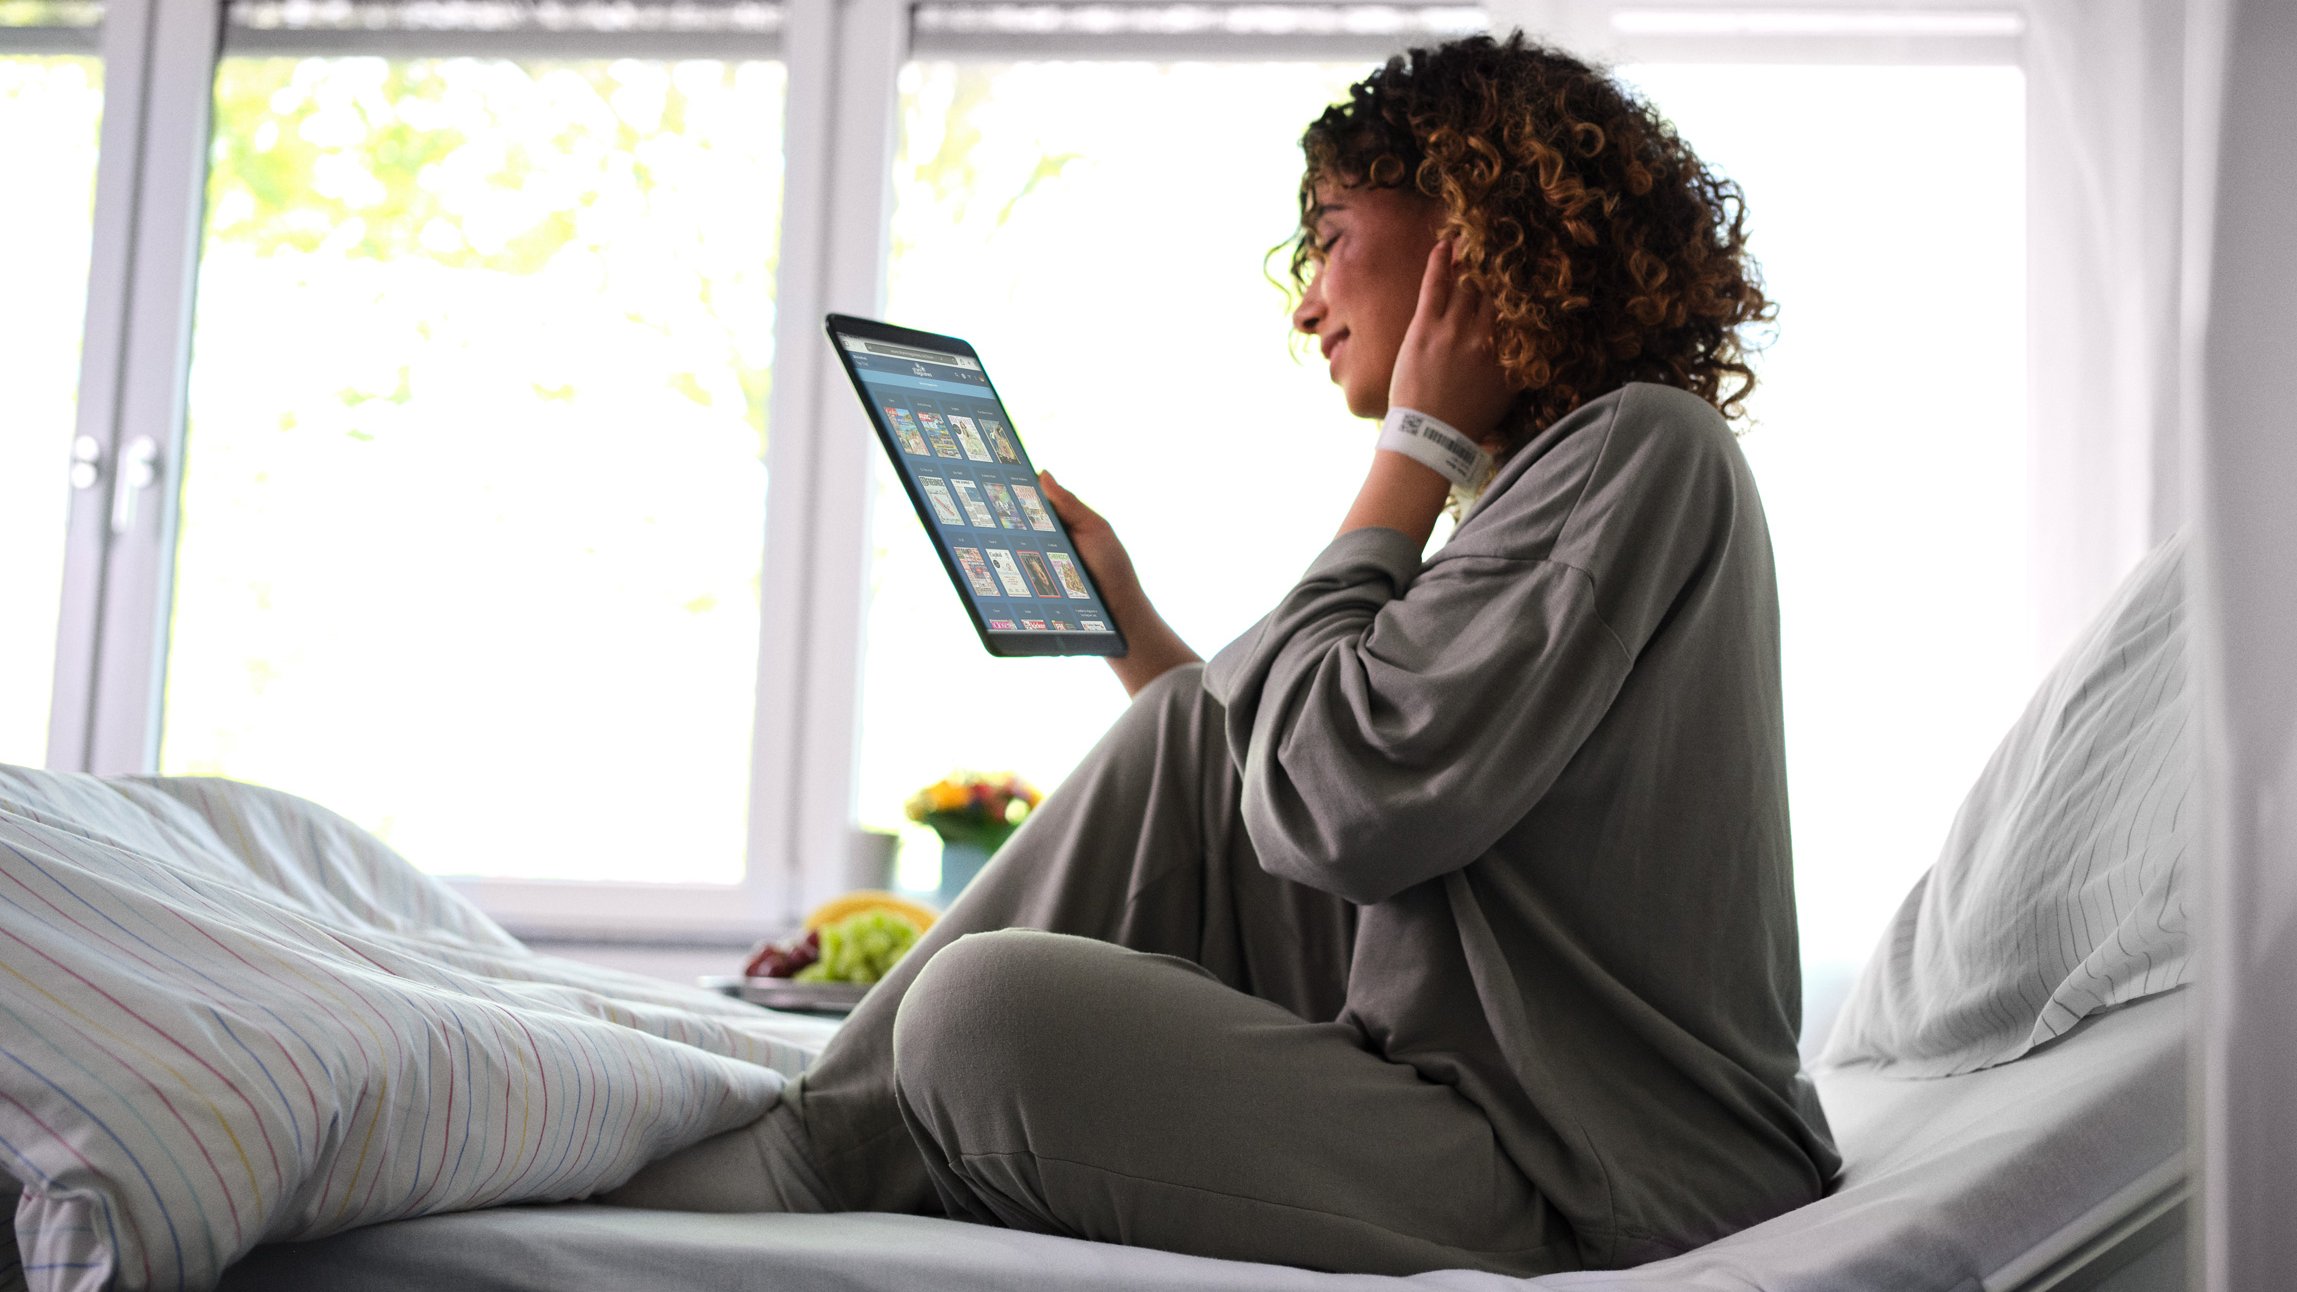 BEWATEC Patientenentertainment | Patientin sitzt im Bett und liest eMagazine auf Tablet